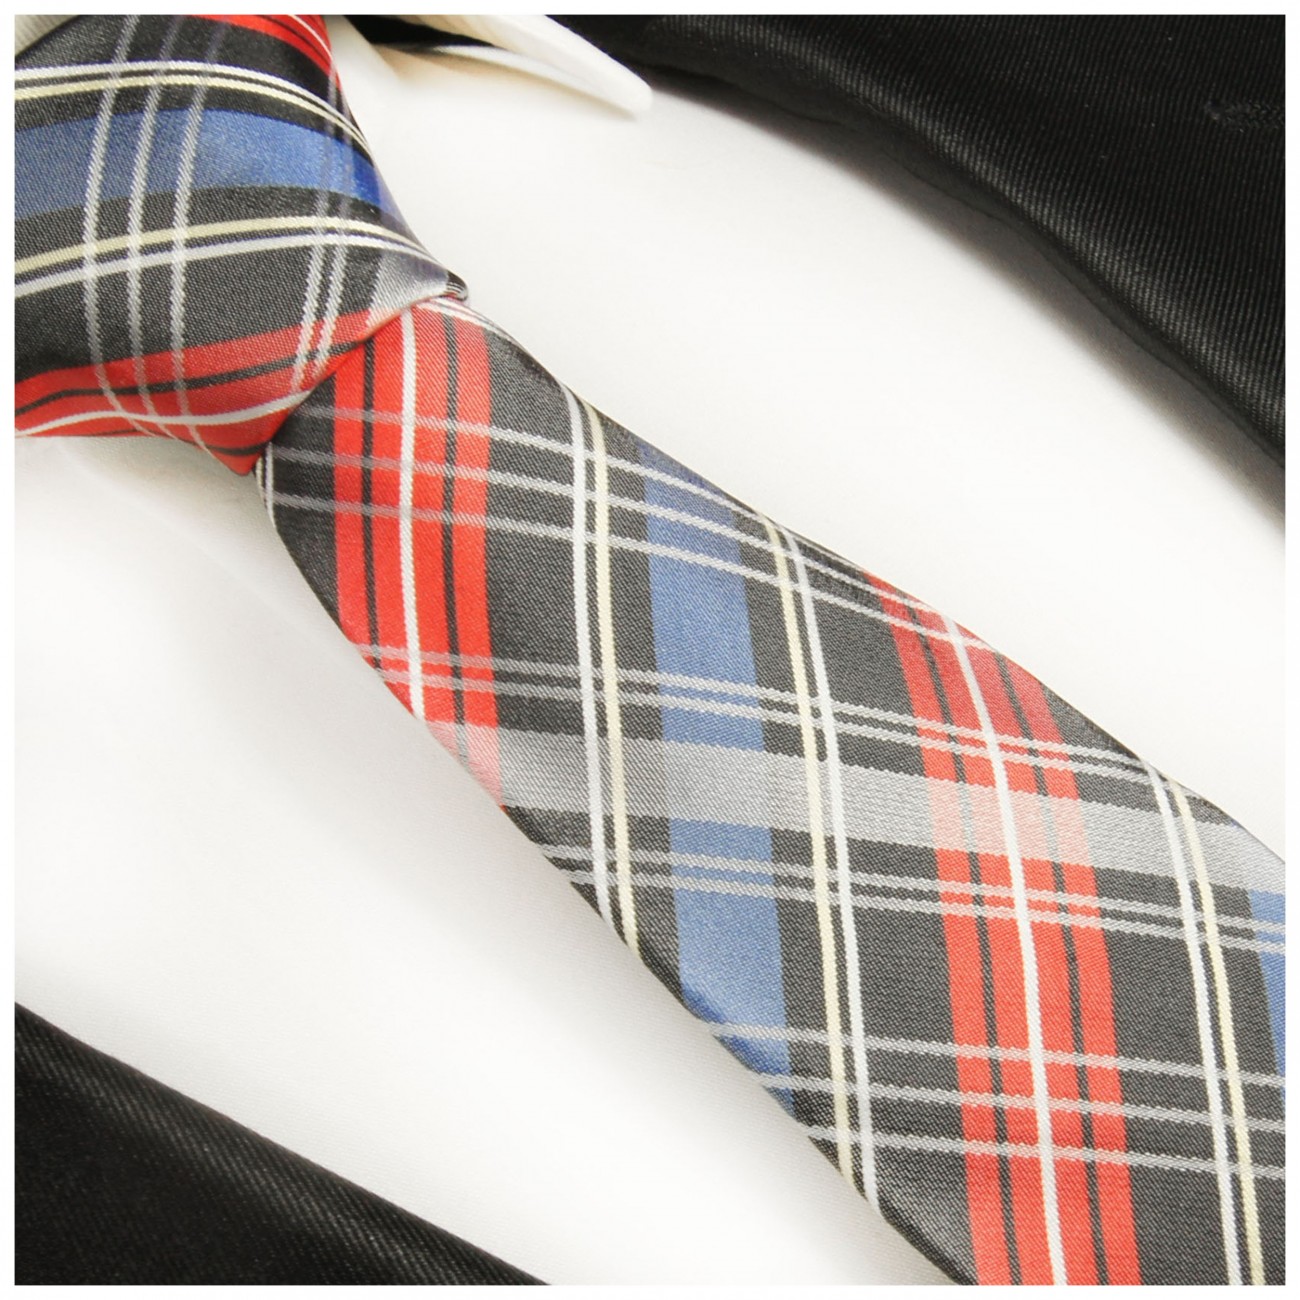 Krawatte blau rot Schottenmuster Seidenkrawatte - Seide - Krawatte mit Einstecktuch und Manschettenknöpfe